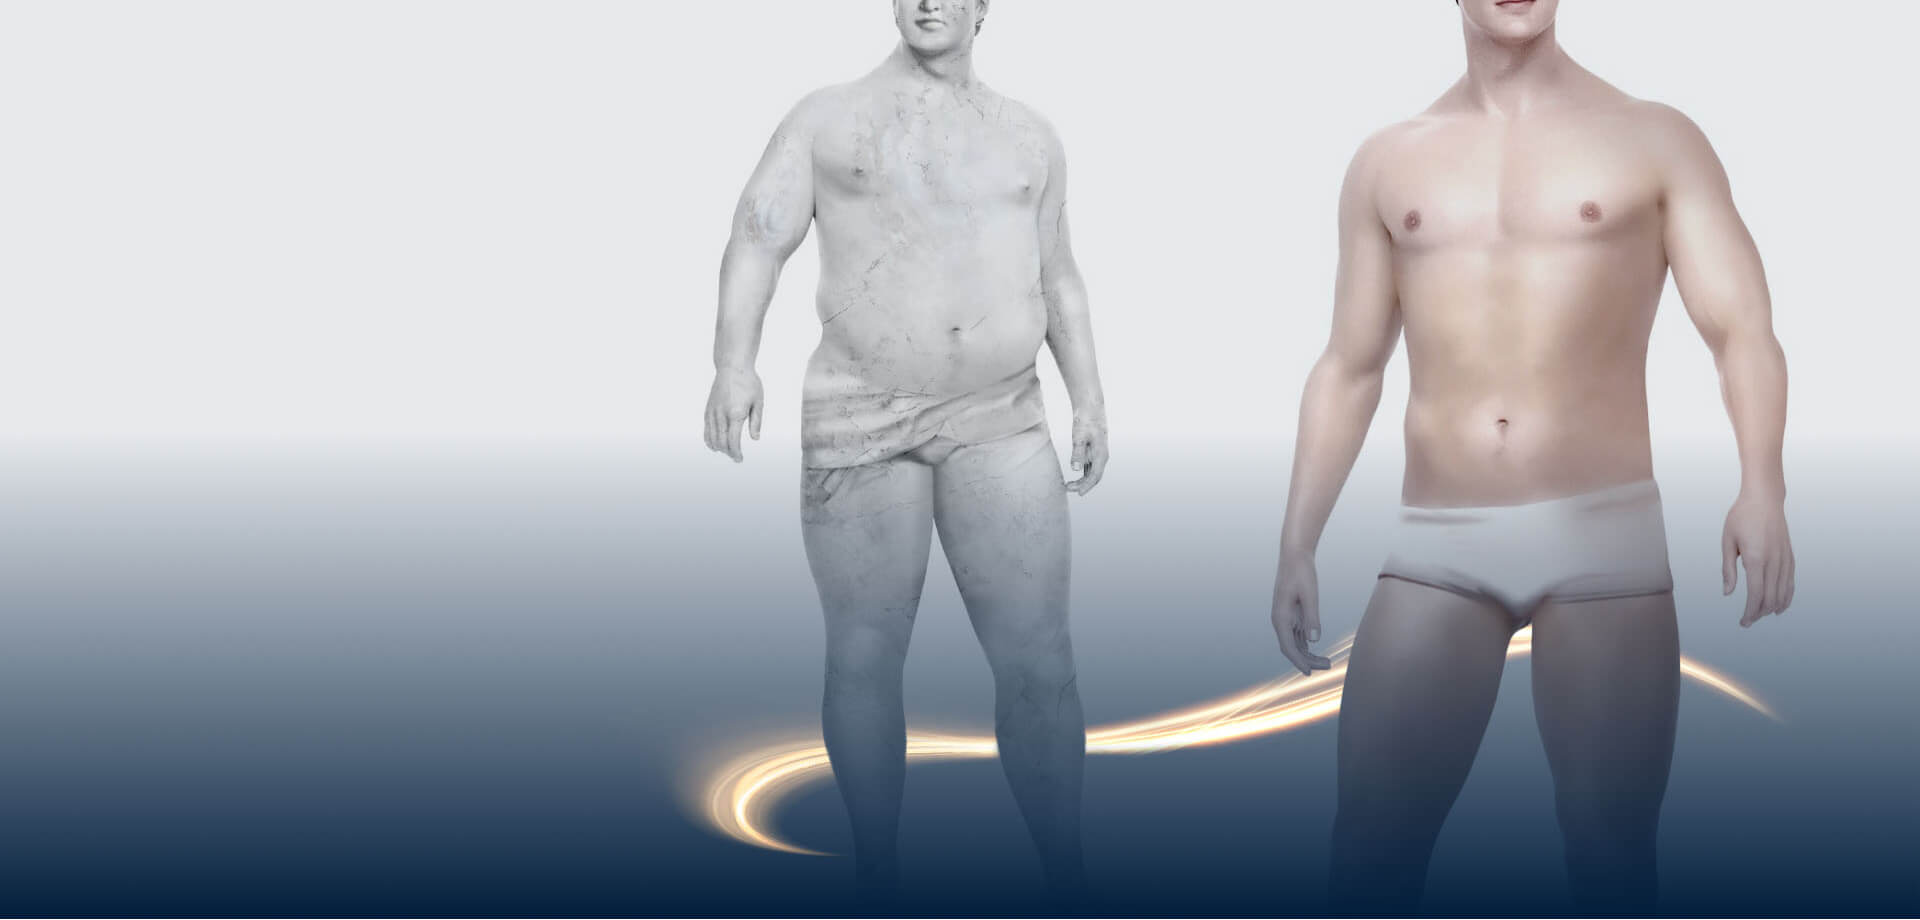 Säule eines übergewichtigen Mannes und Männerkörper nach Gewichtsreduktion